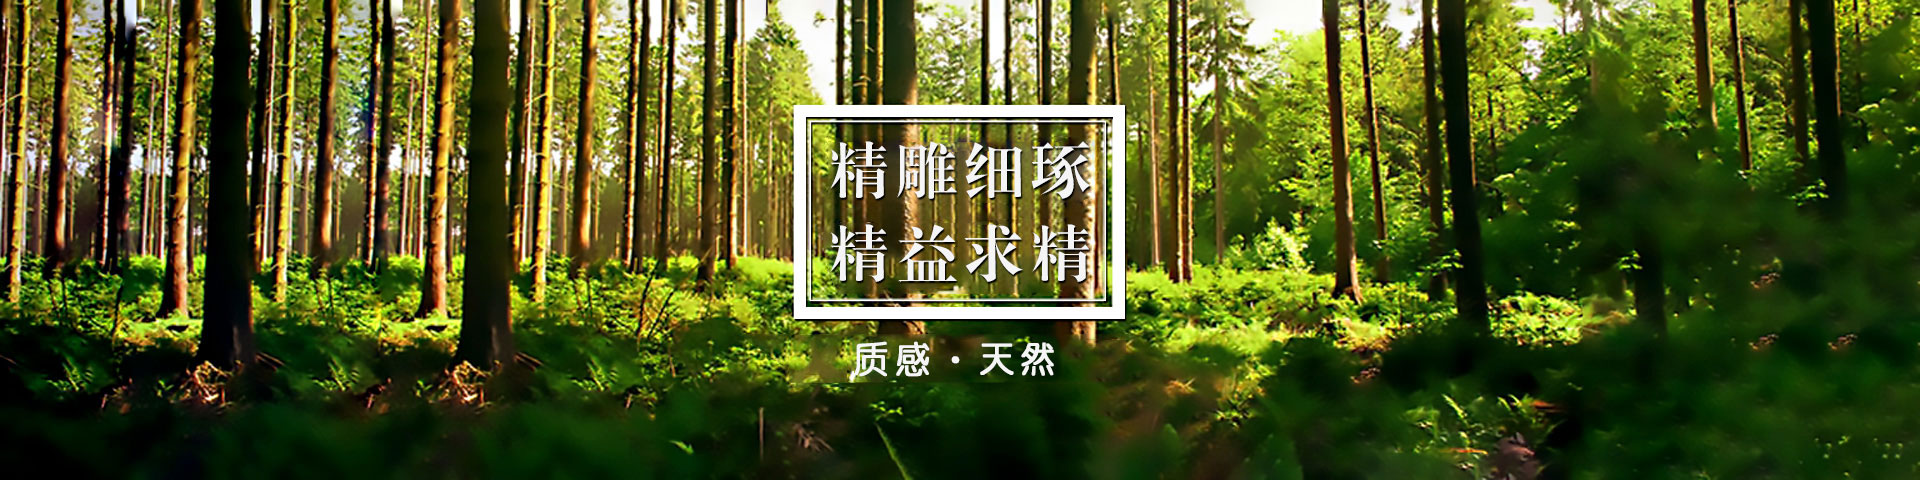 上海康源生态木业有限公司